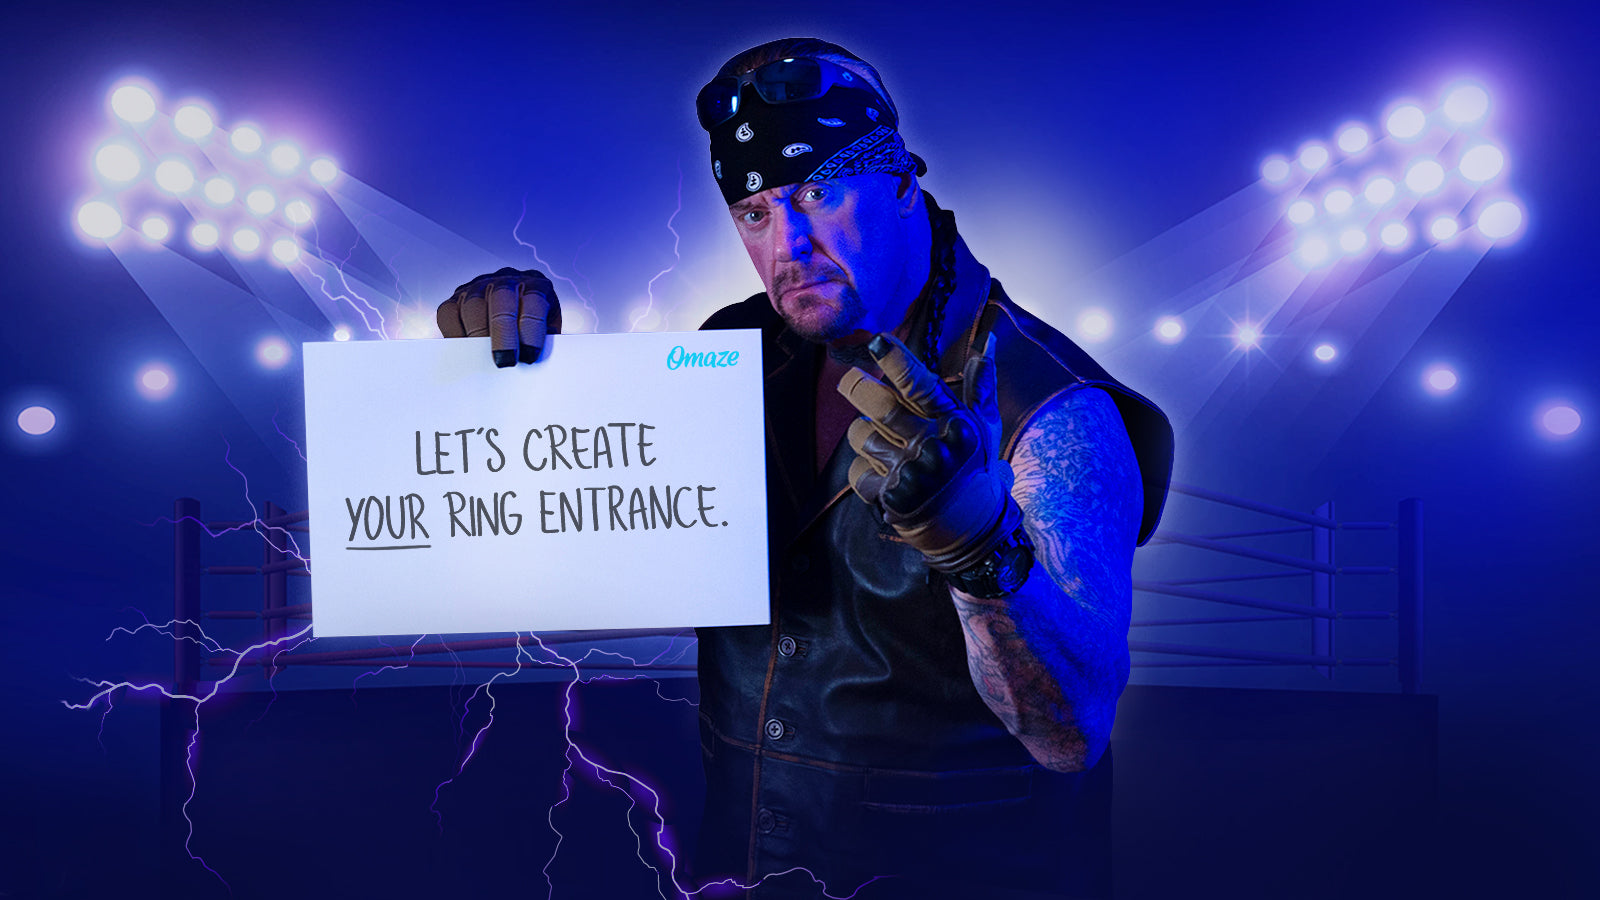 The Undertaker | WWE Wiki | Fandom